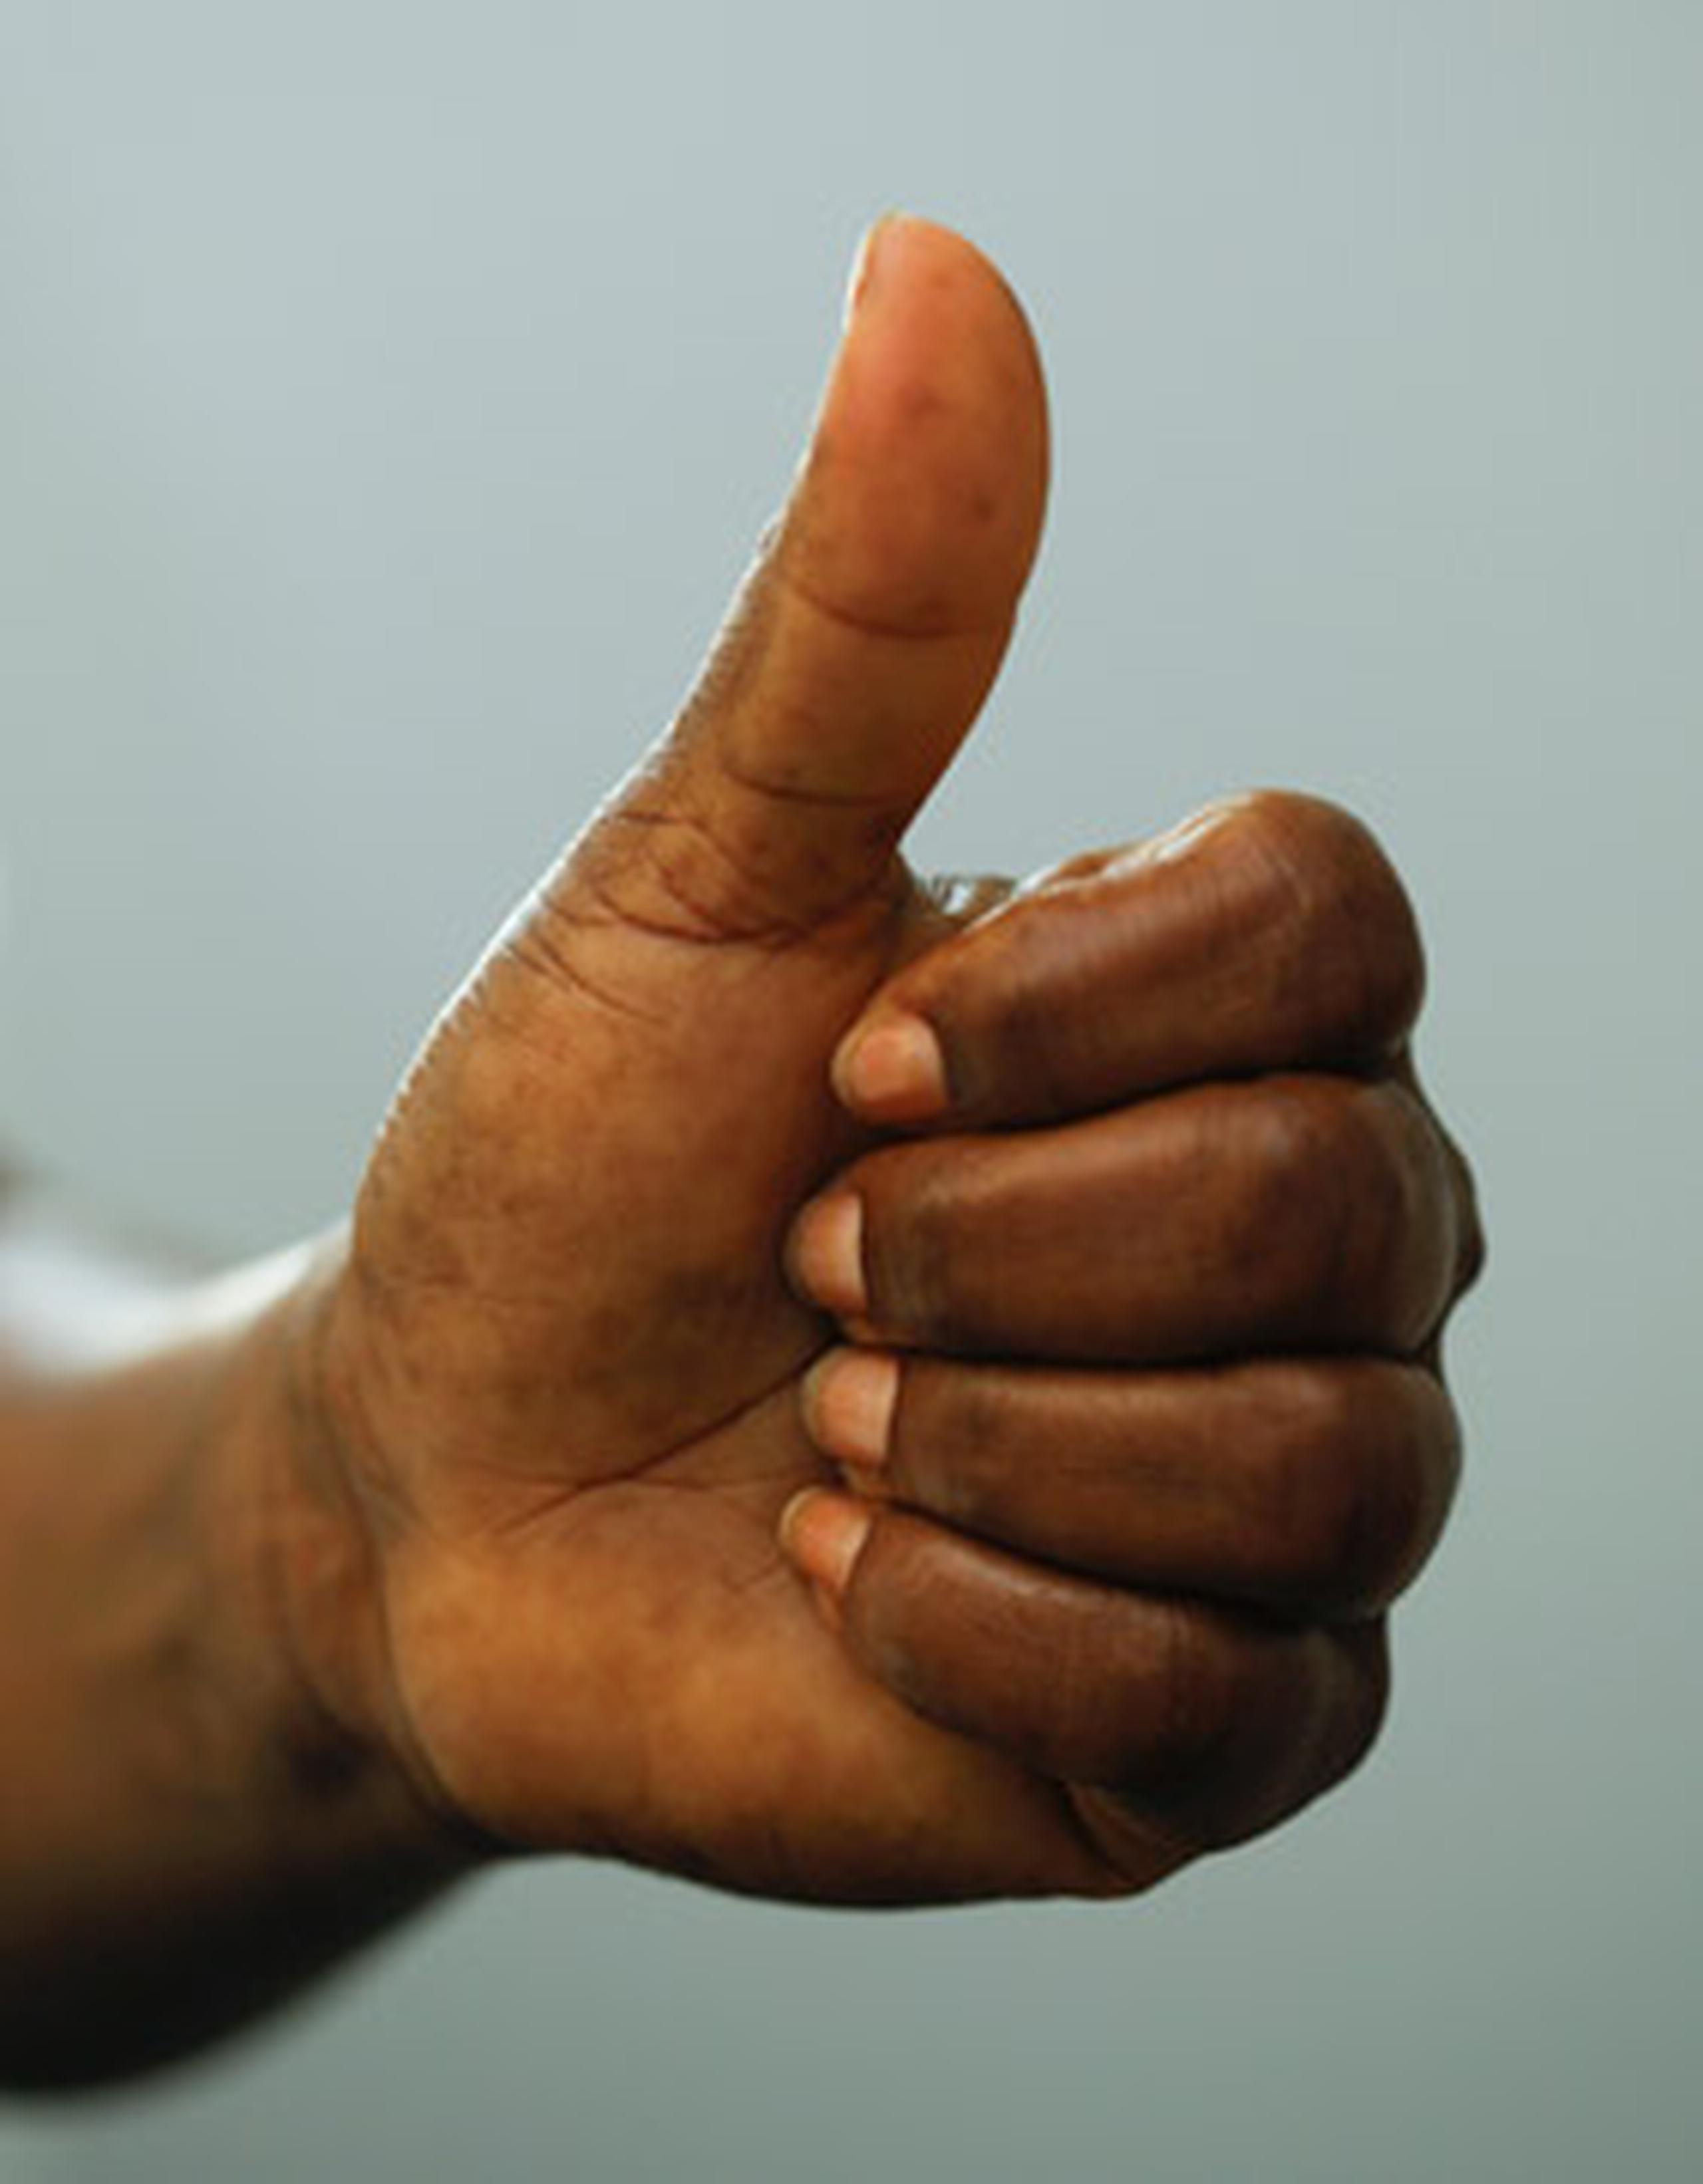 El "digit ratio" se consigue al dividir la longitud del dedo índice entre la del dedo anular. Mientras menor es esa proporción, más largo tiende a ser el pene. (Archivo)